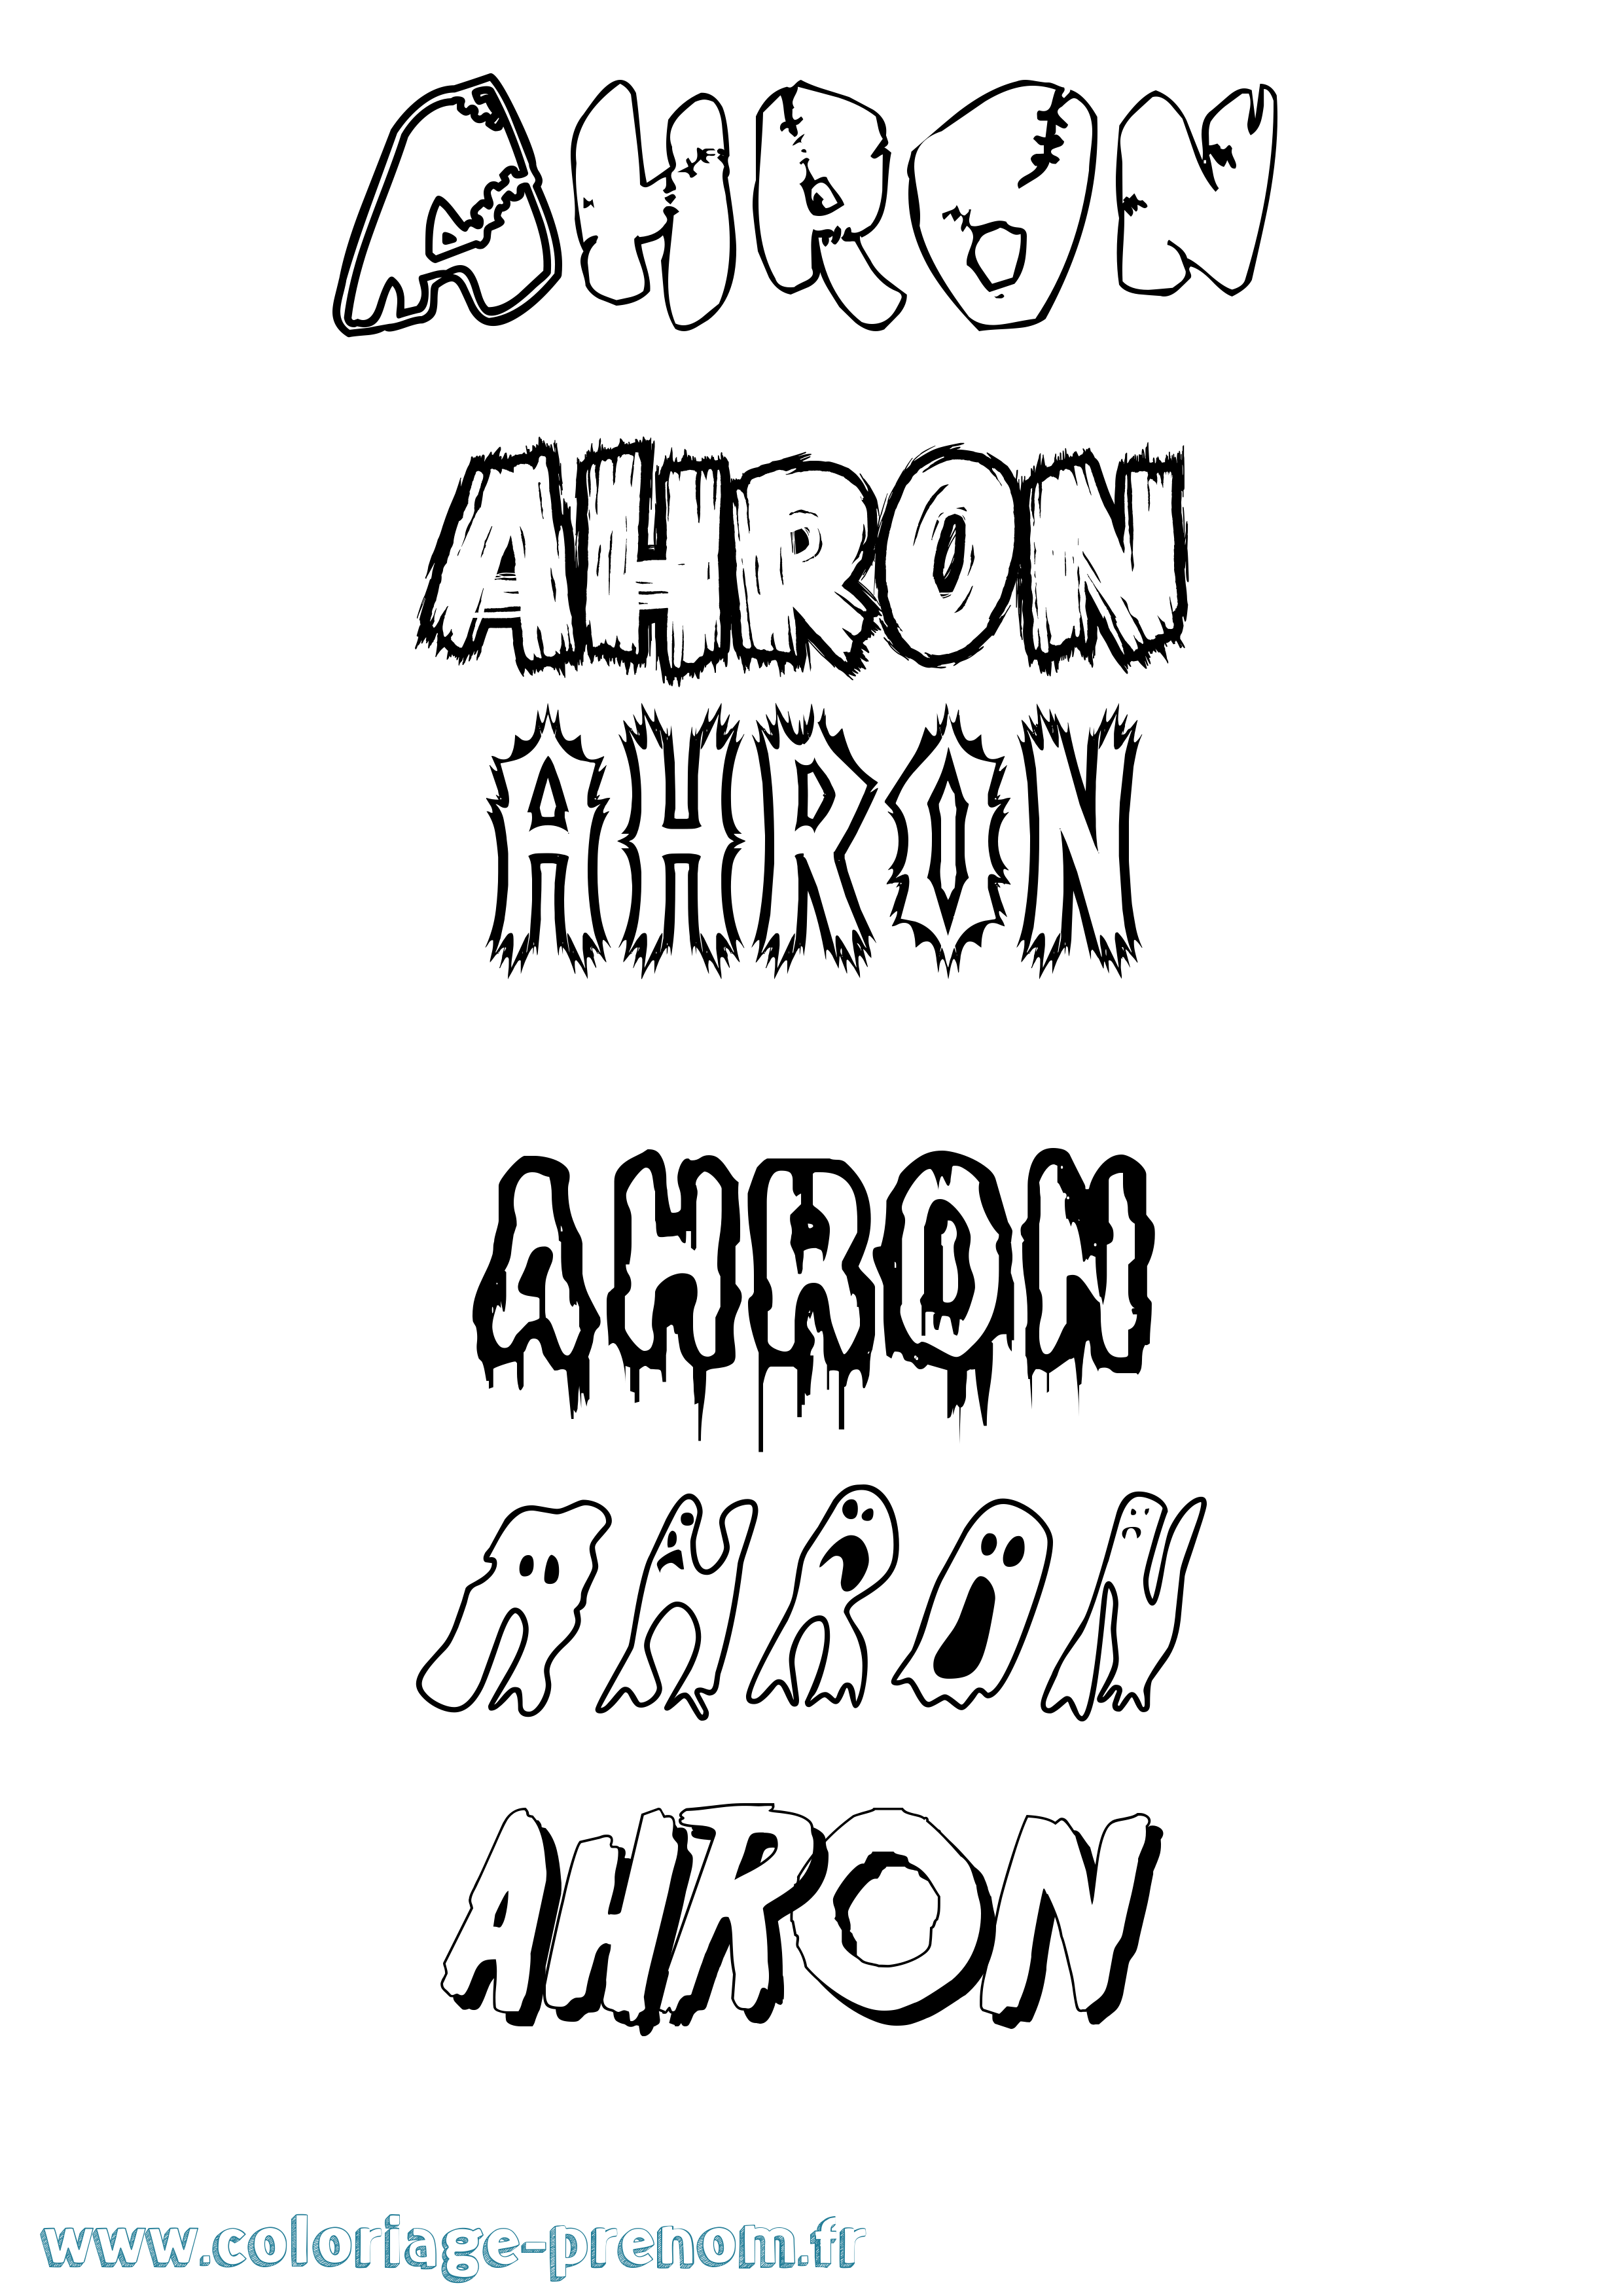 Coloriage prénom Ahron Frisson